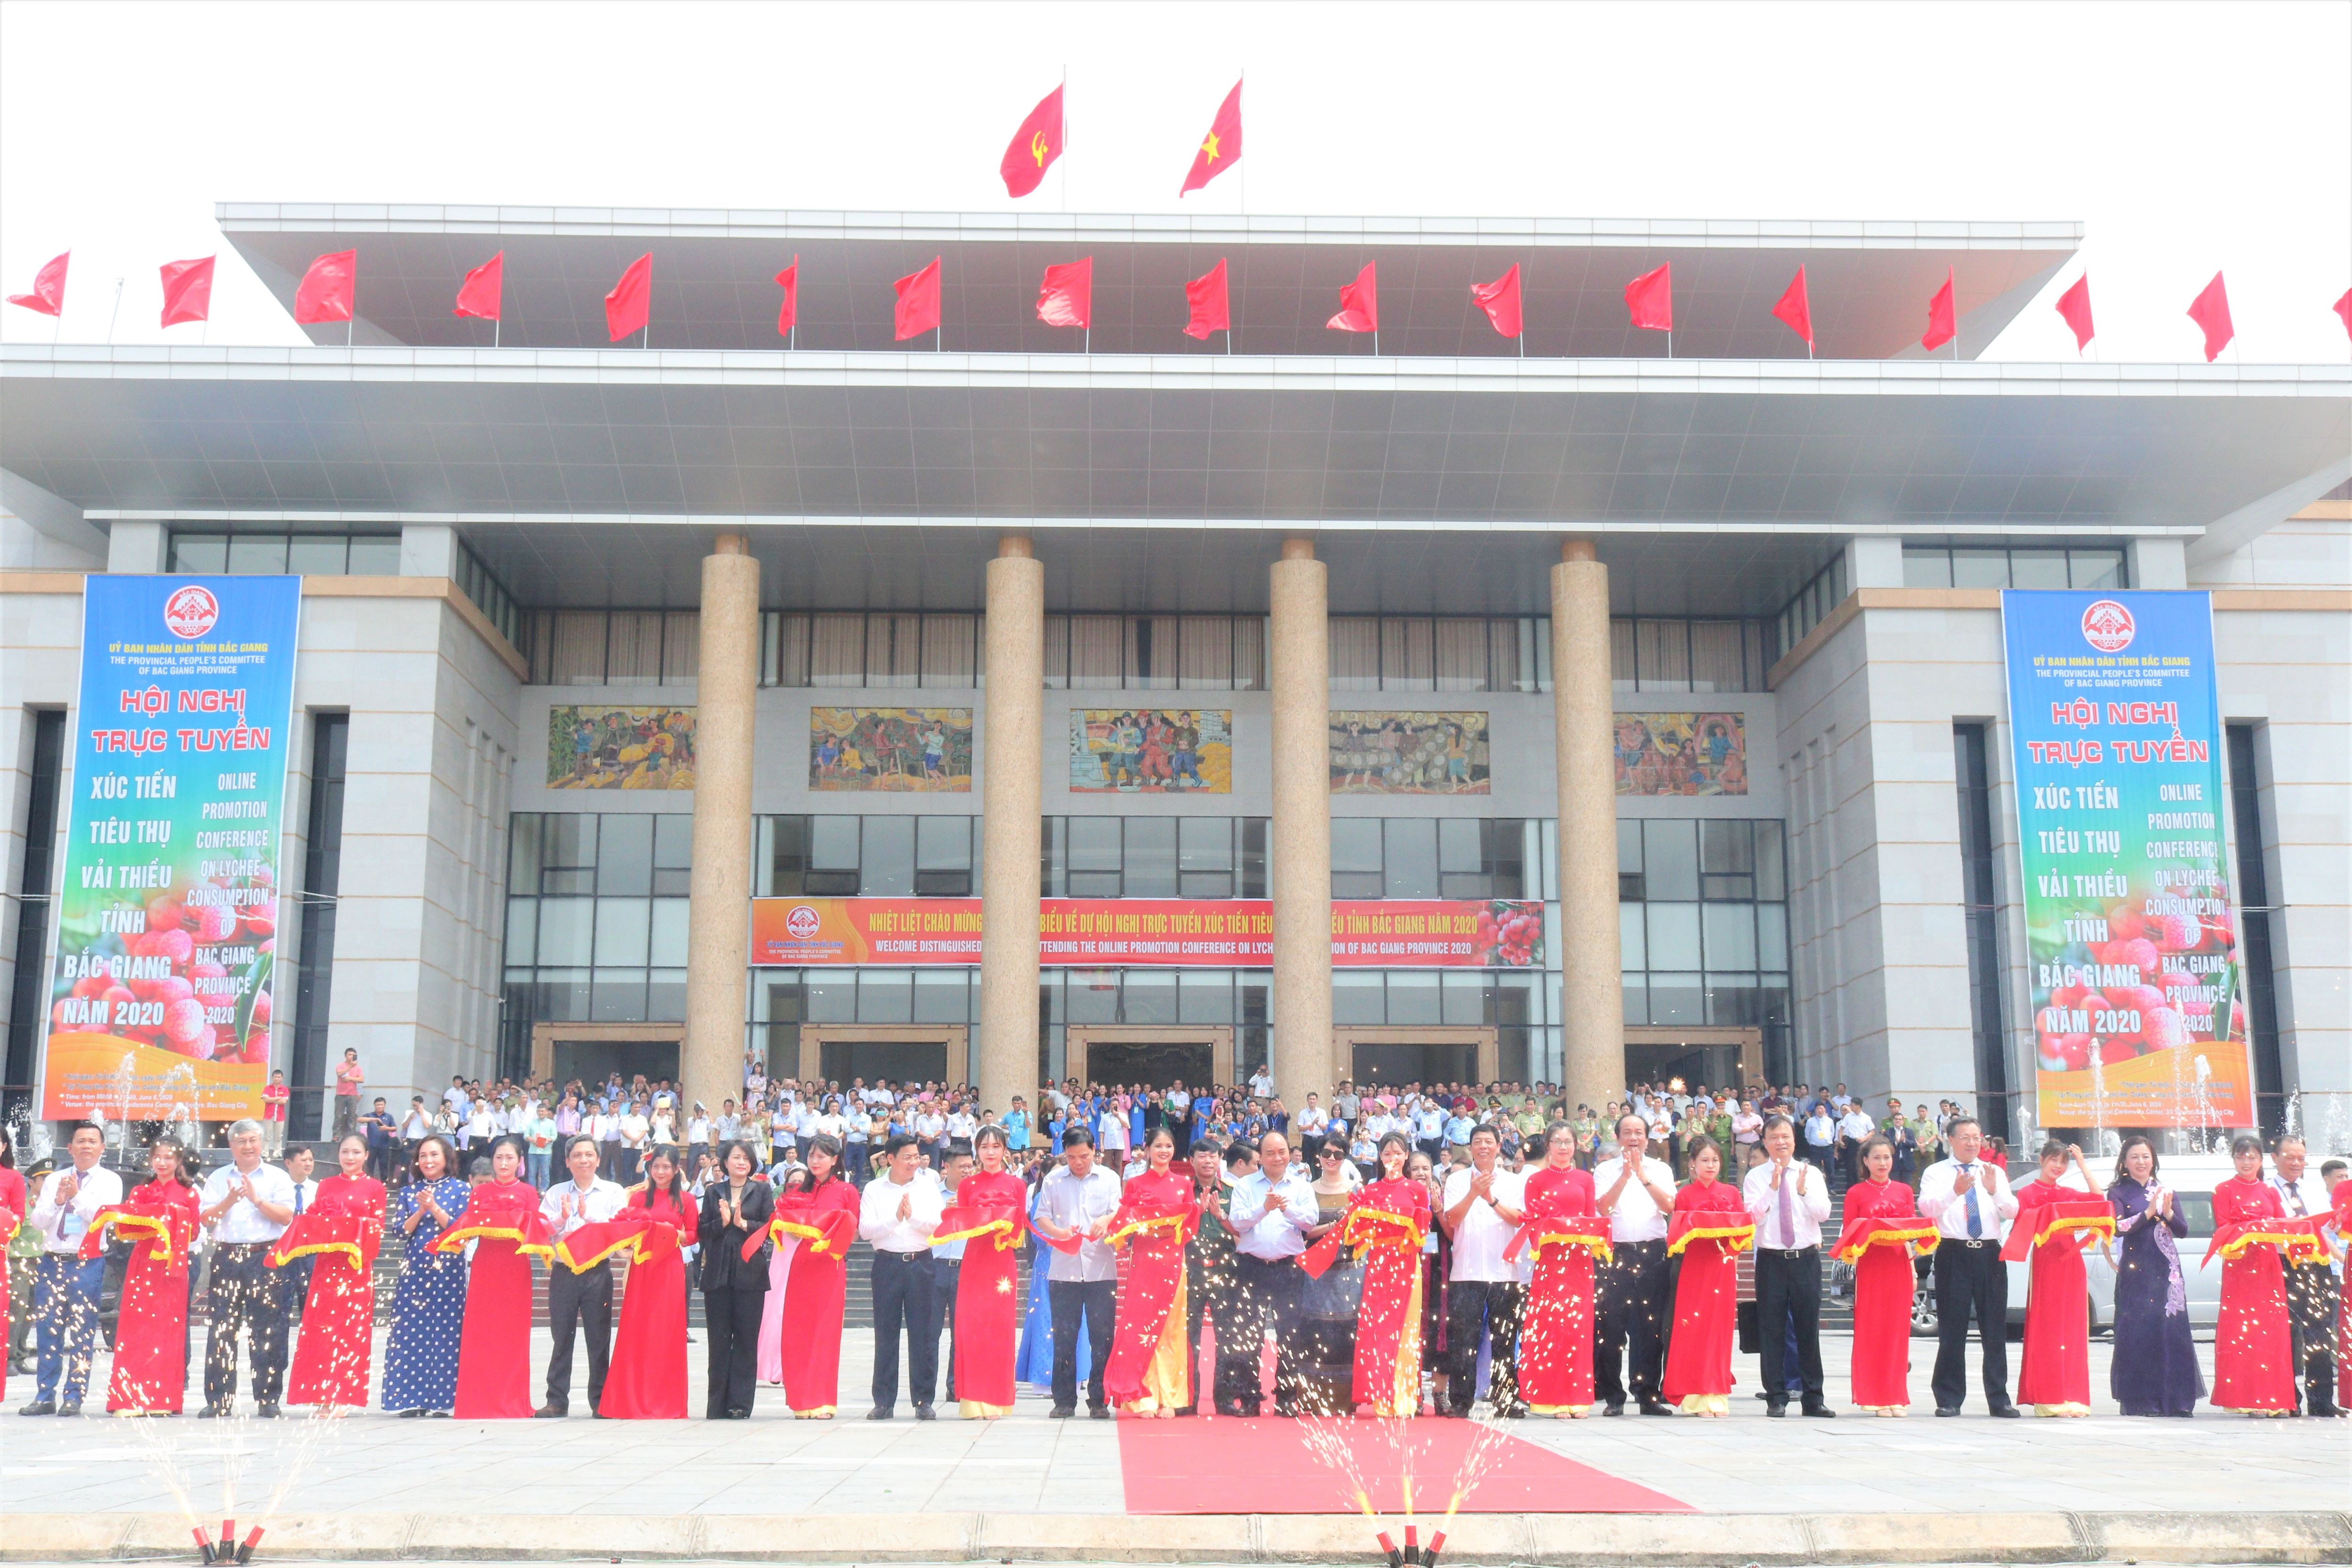 Thủ tướng Nguyễn Xuân Phúc và đoàn công tác Chính phủ cắt băng tại lễ xuất hành đoàn xe vải thiều đi tiêu thụ tại thị trường trong và ngoài nước